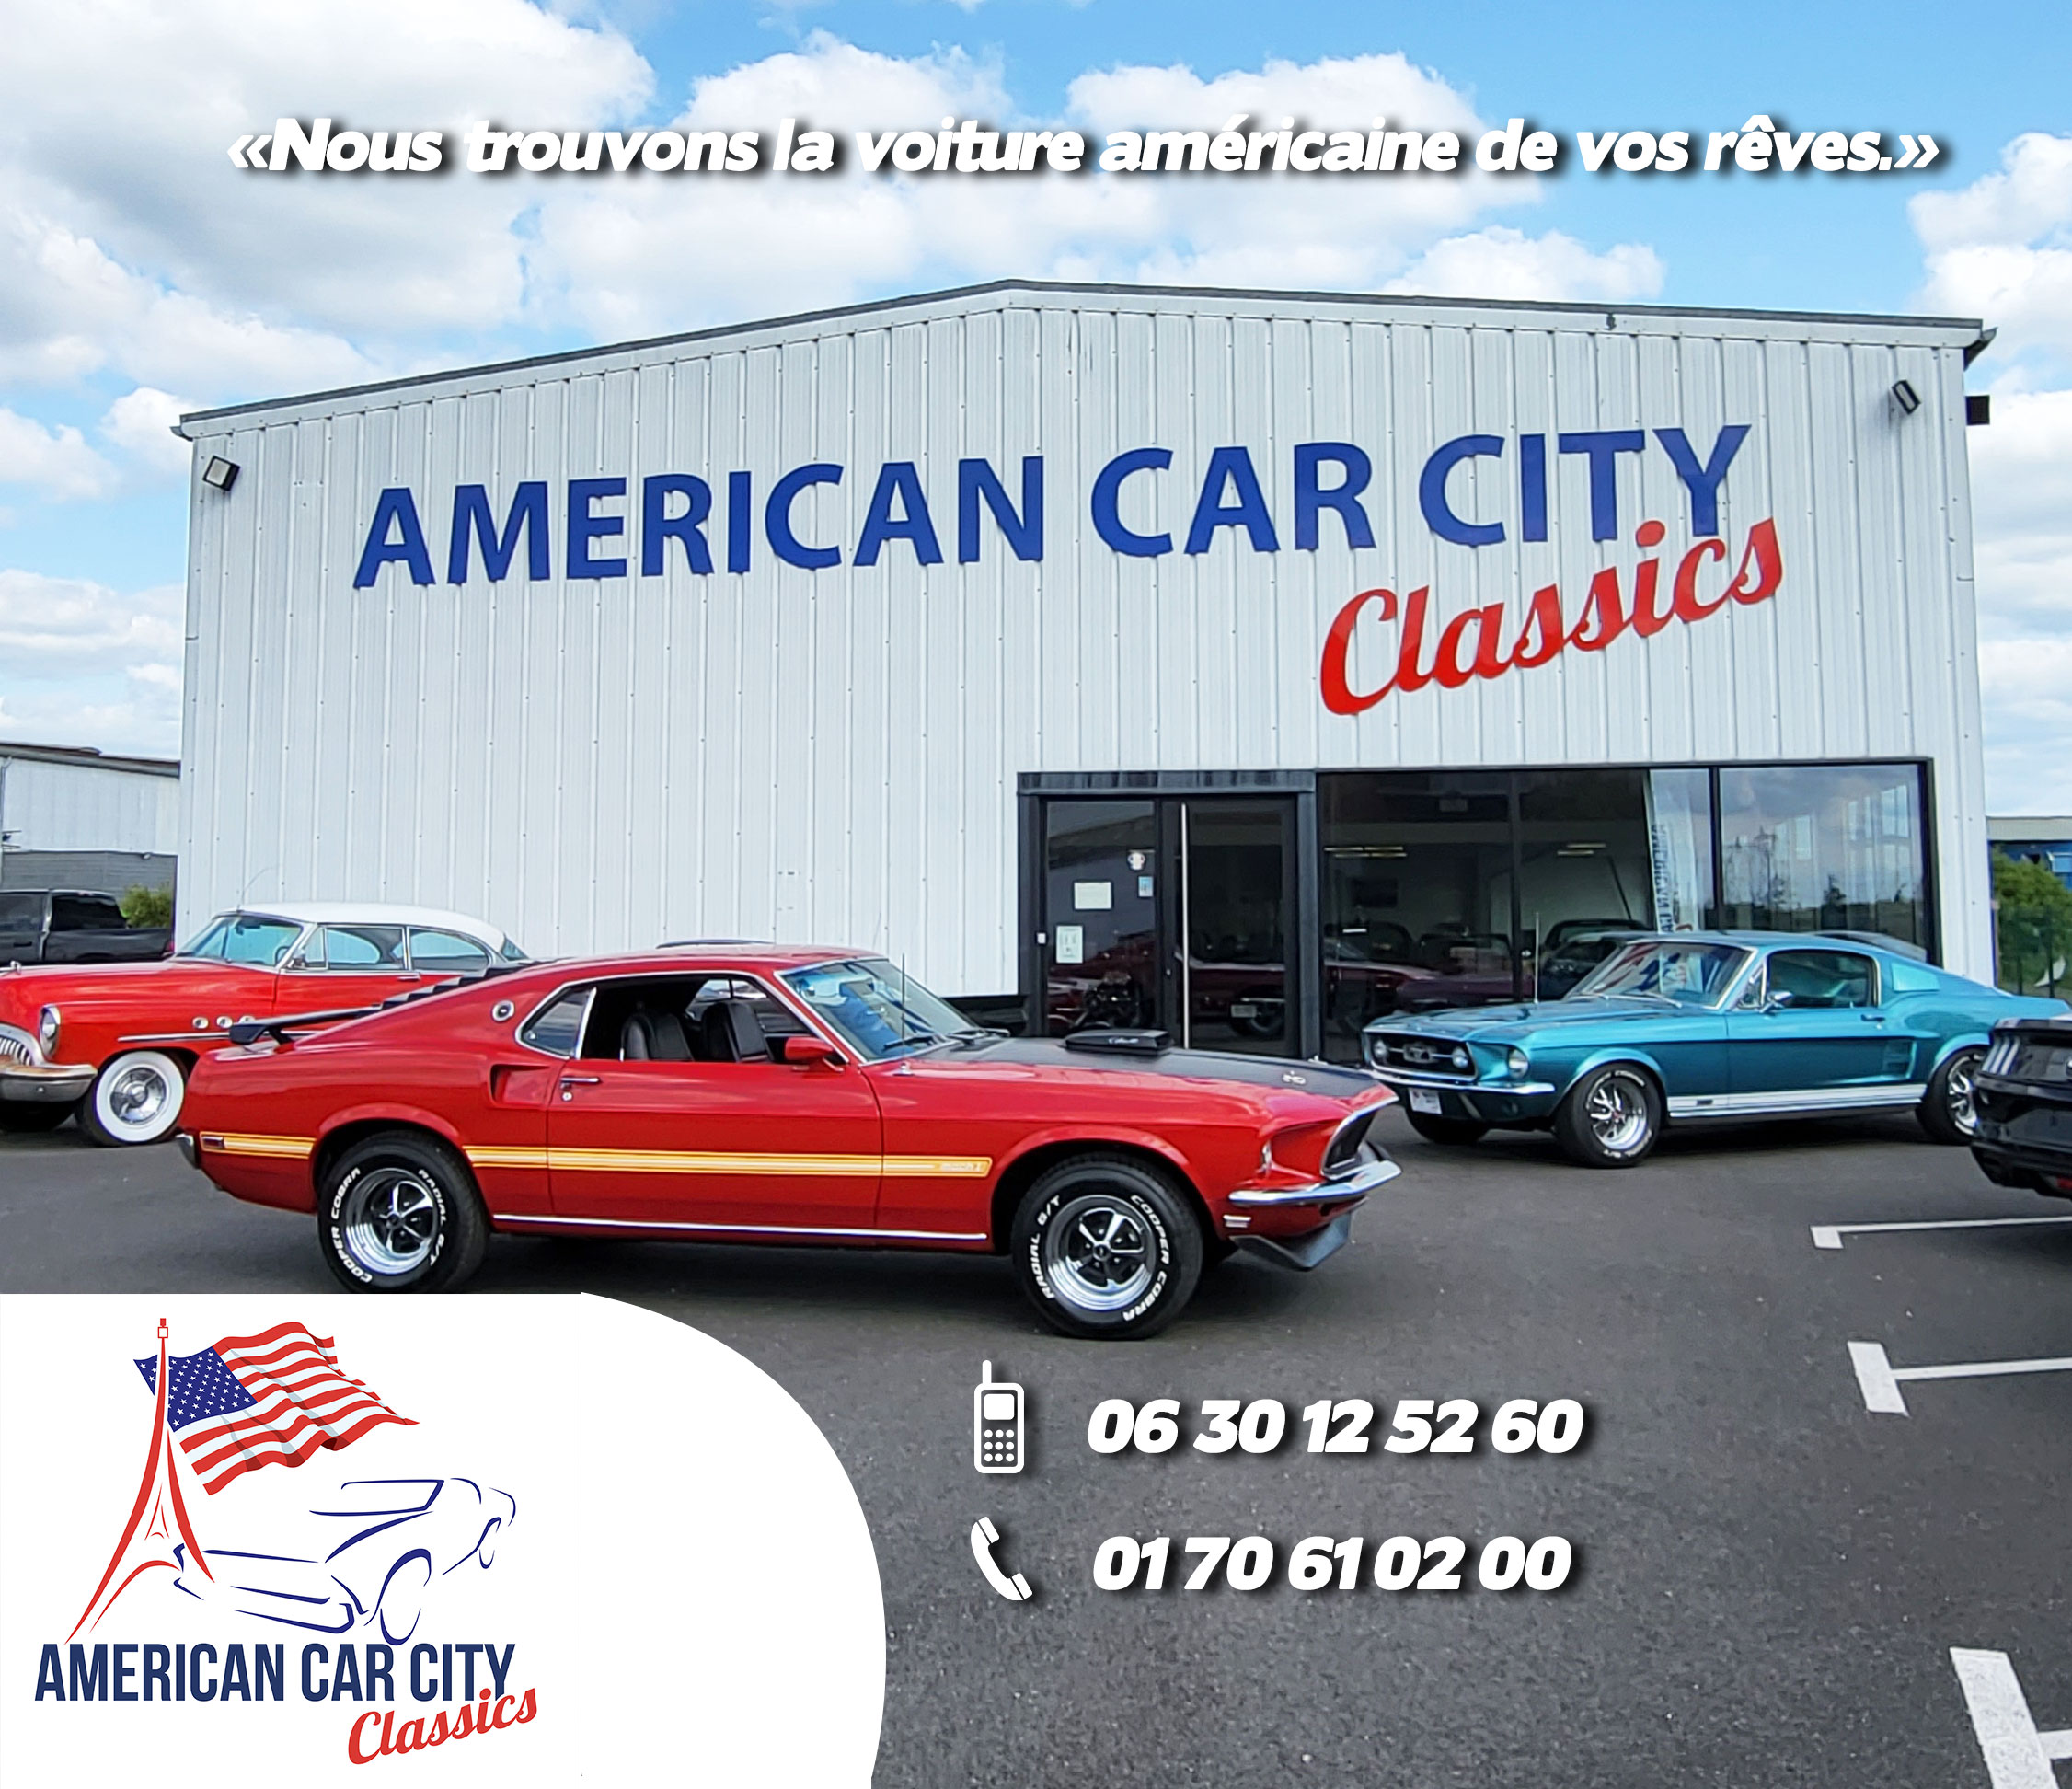 American Car City Classics